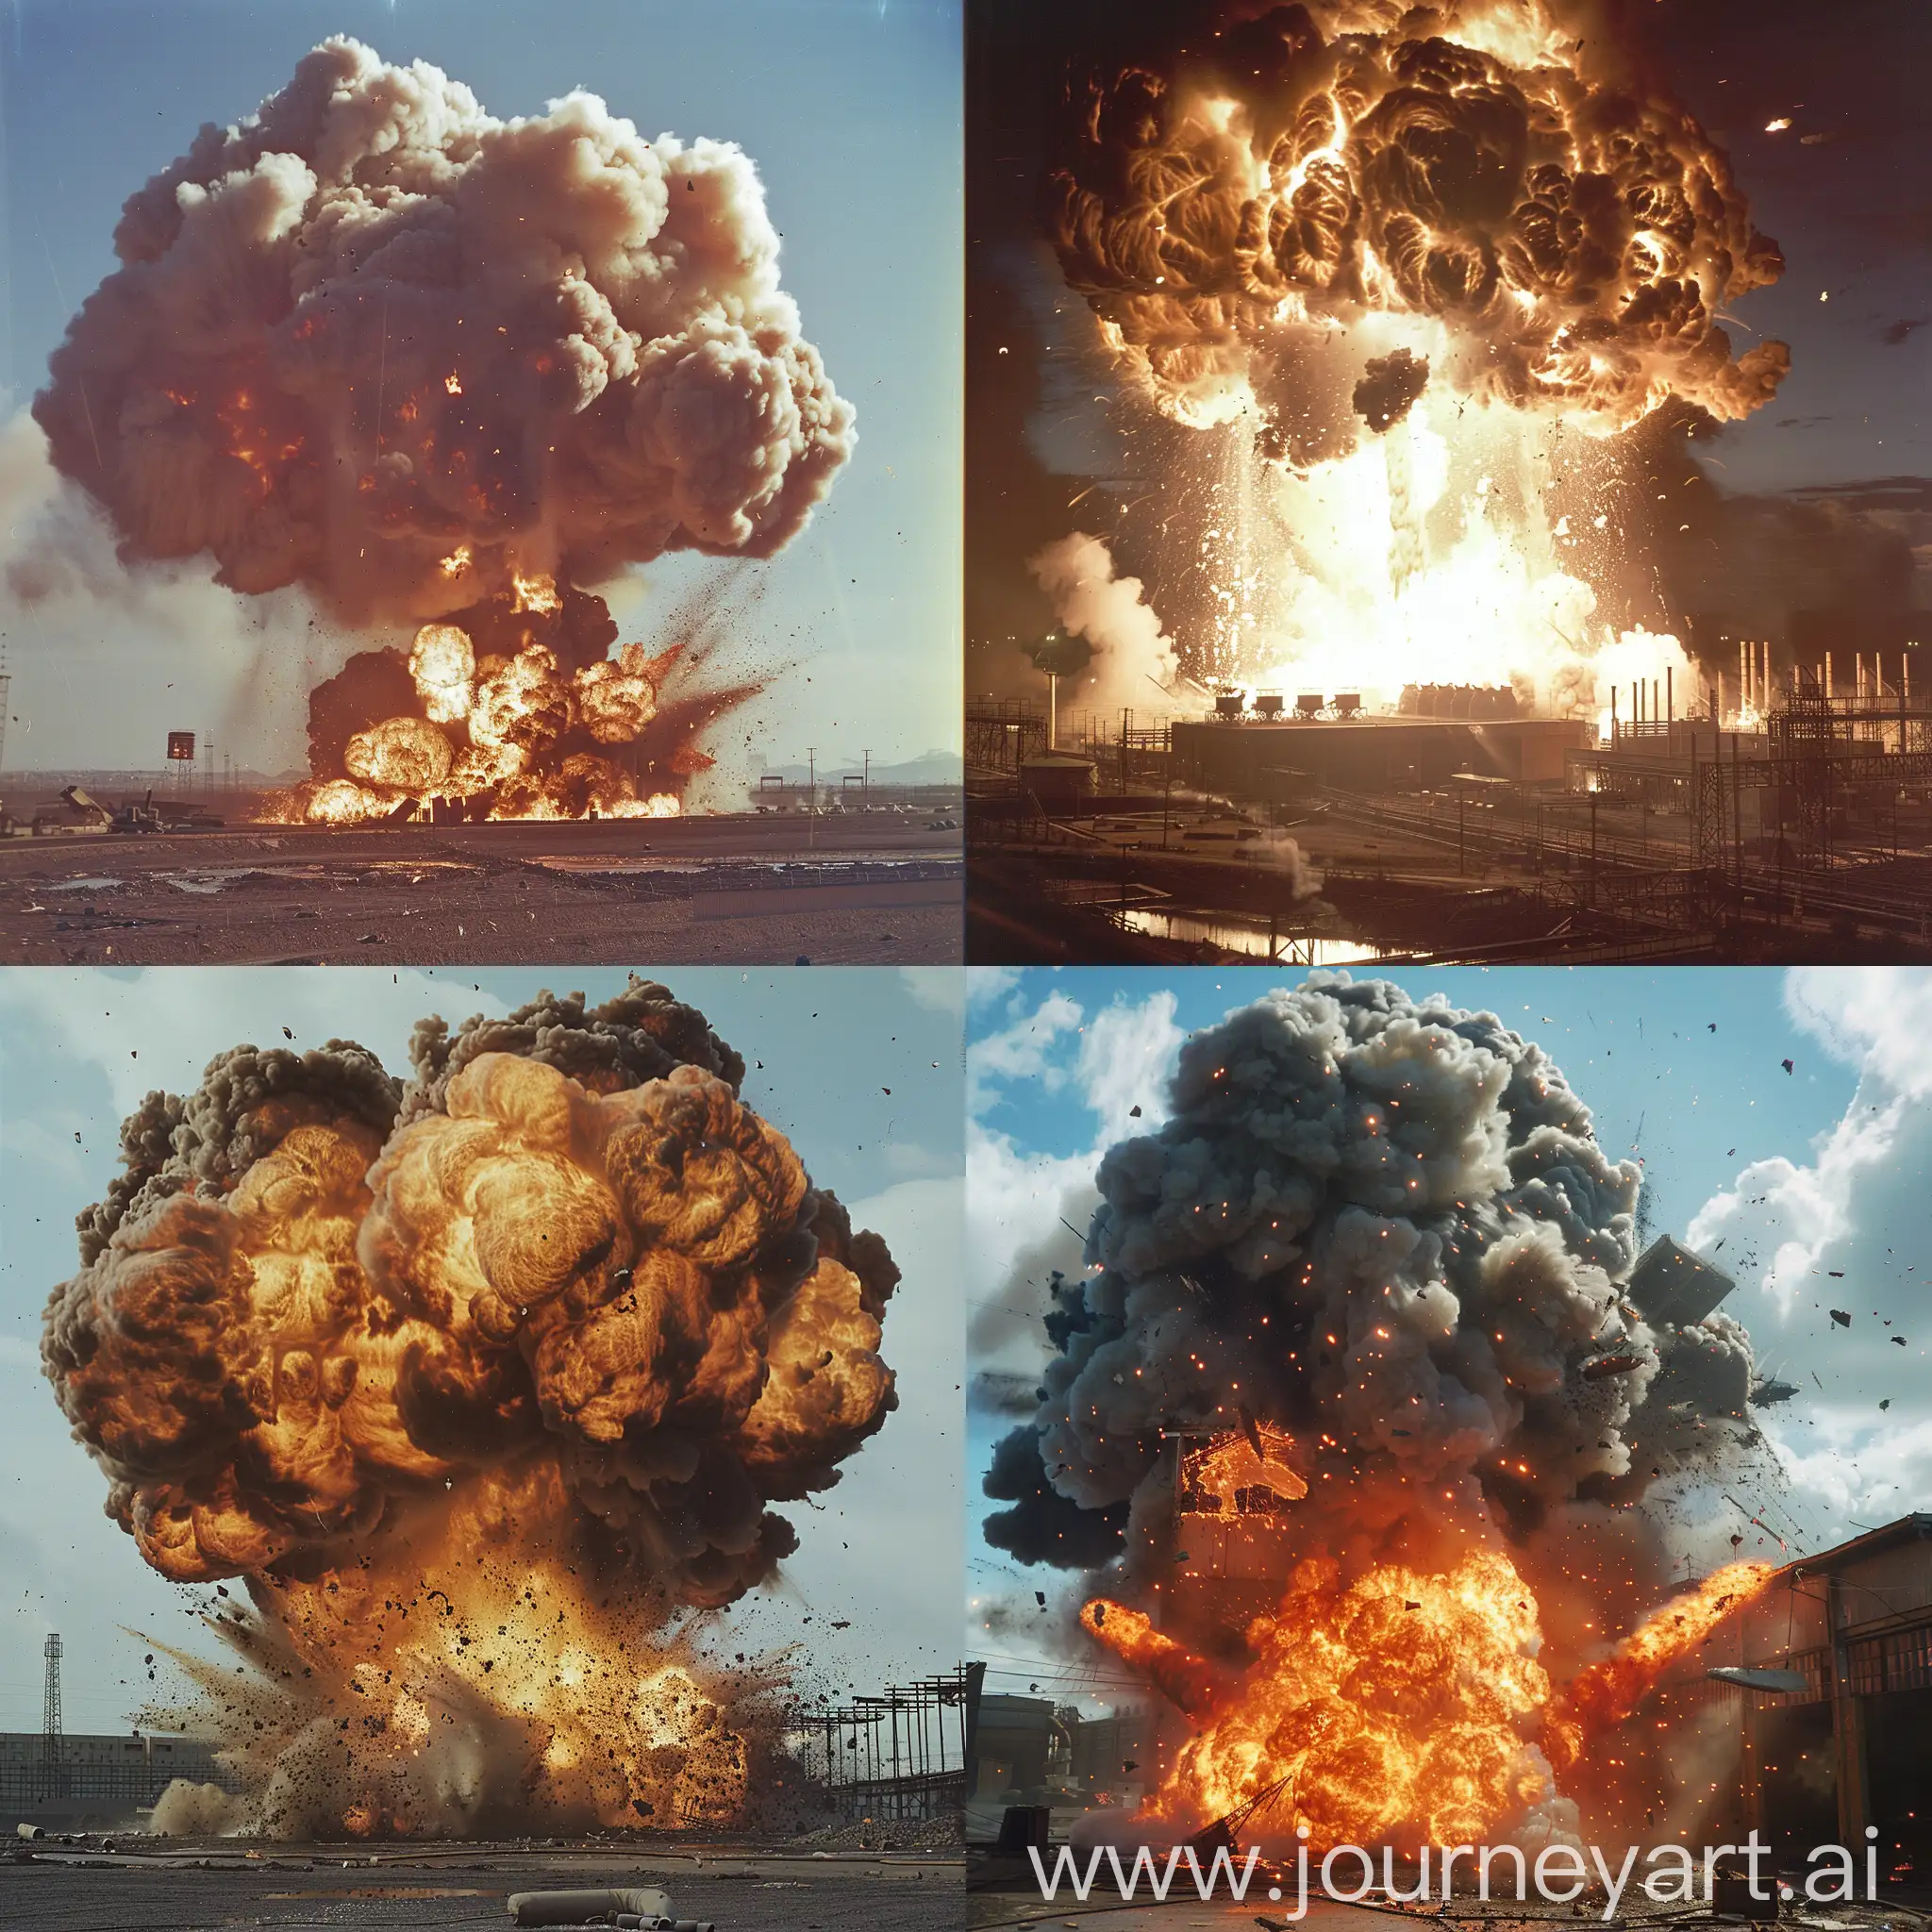 Explosive-Bomb-Factory-Blast-Scene